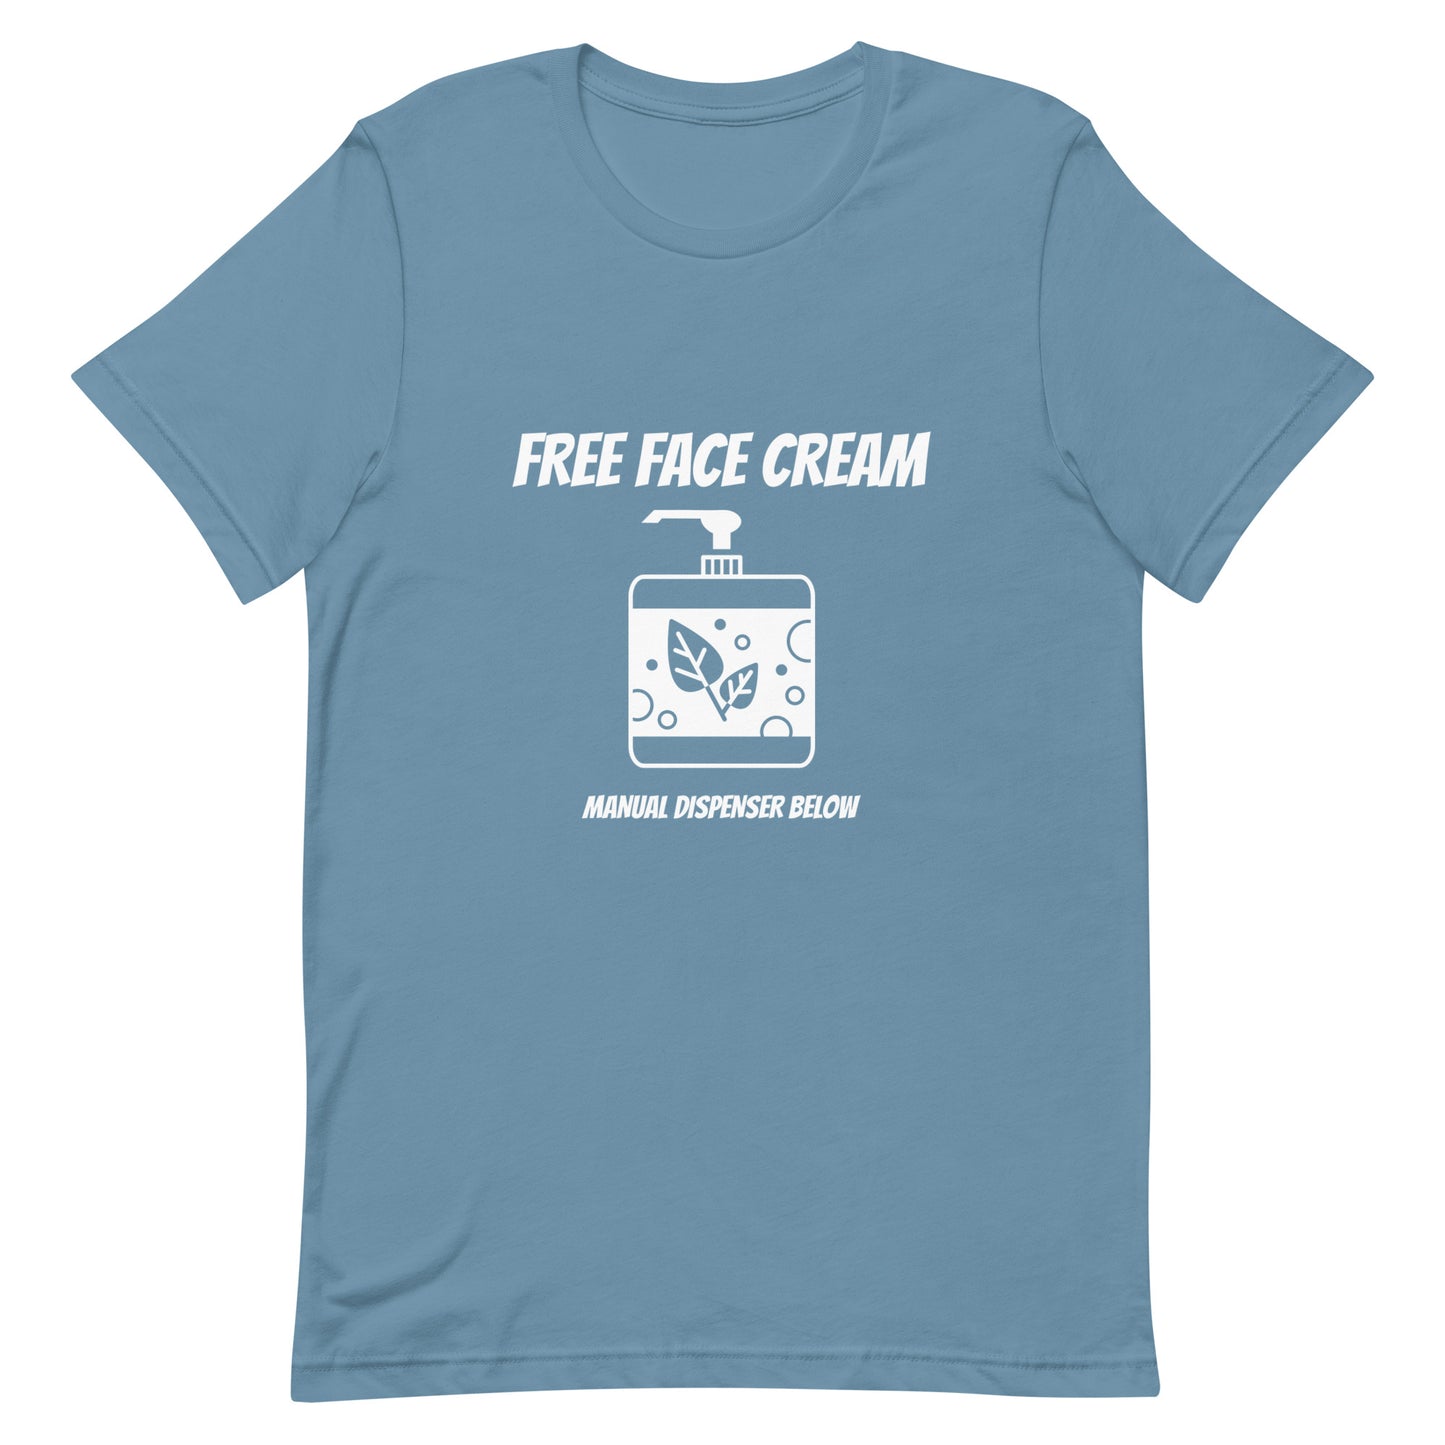 Free face cream